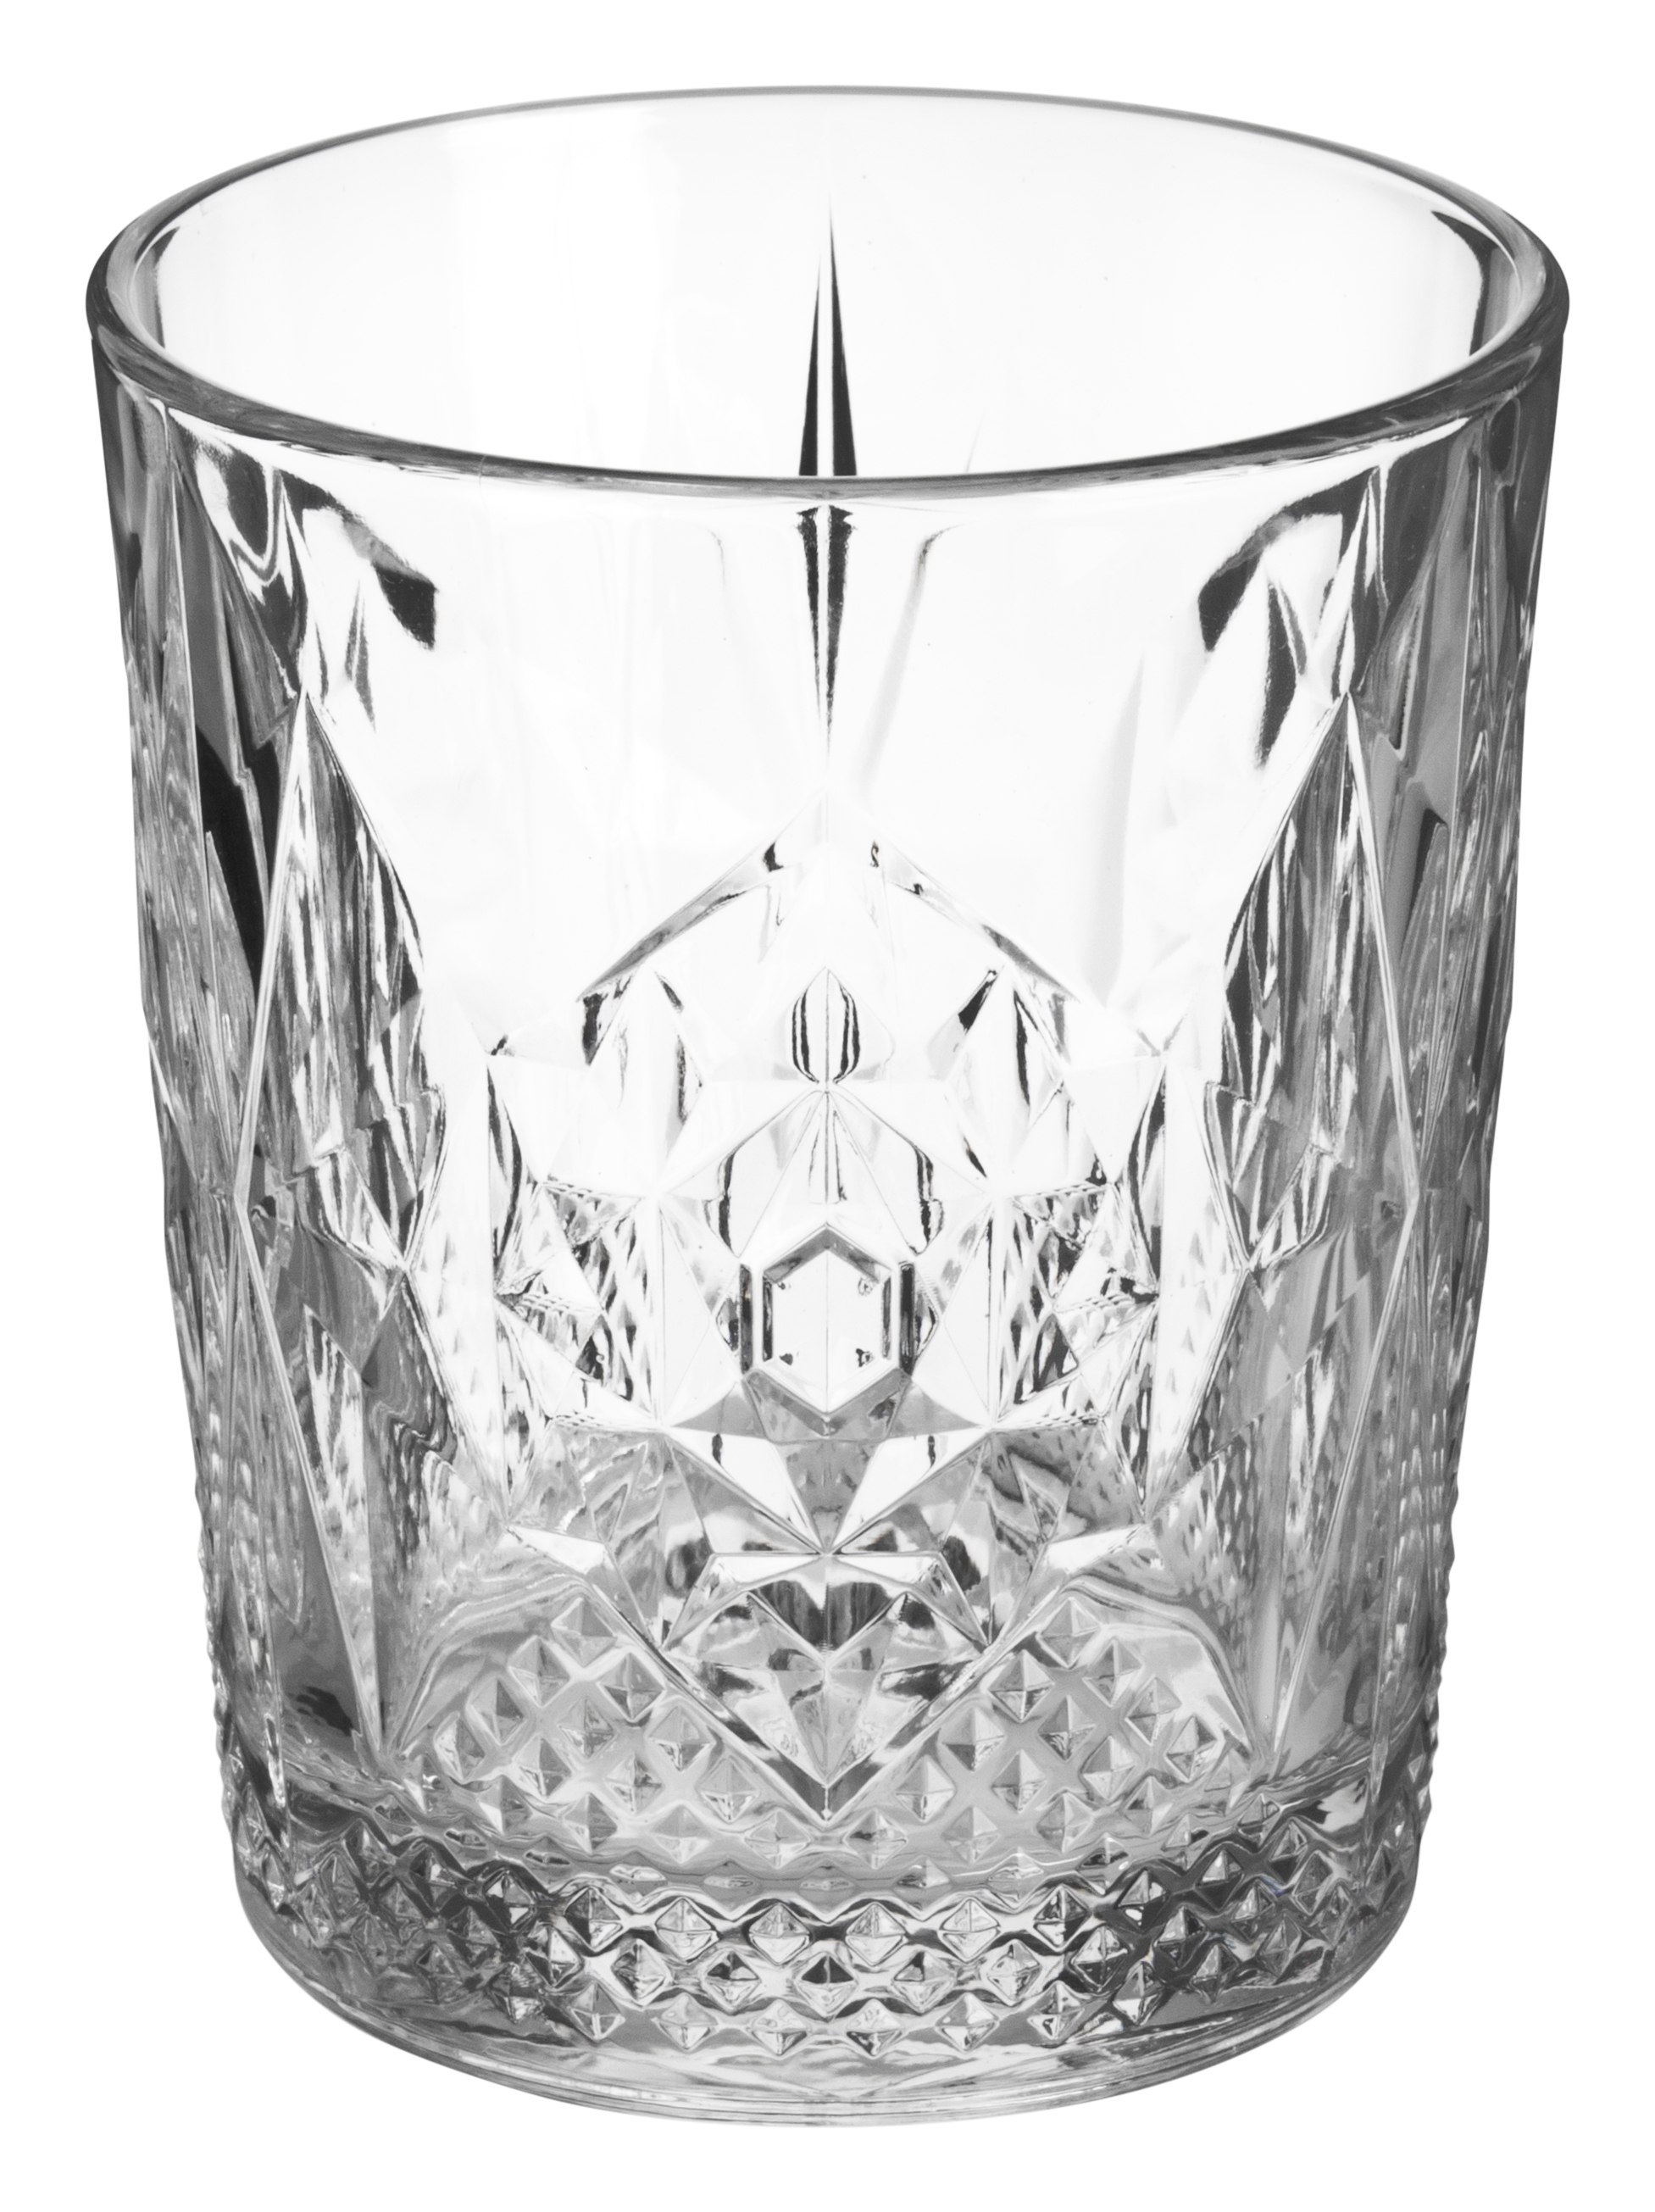 Whiskyglas Stone, D.O.F., Bormioli Rocco - 390ml ( 1 Stk.)